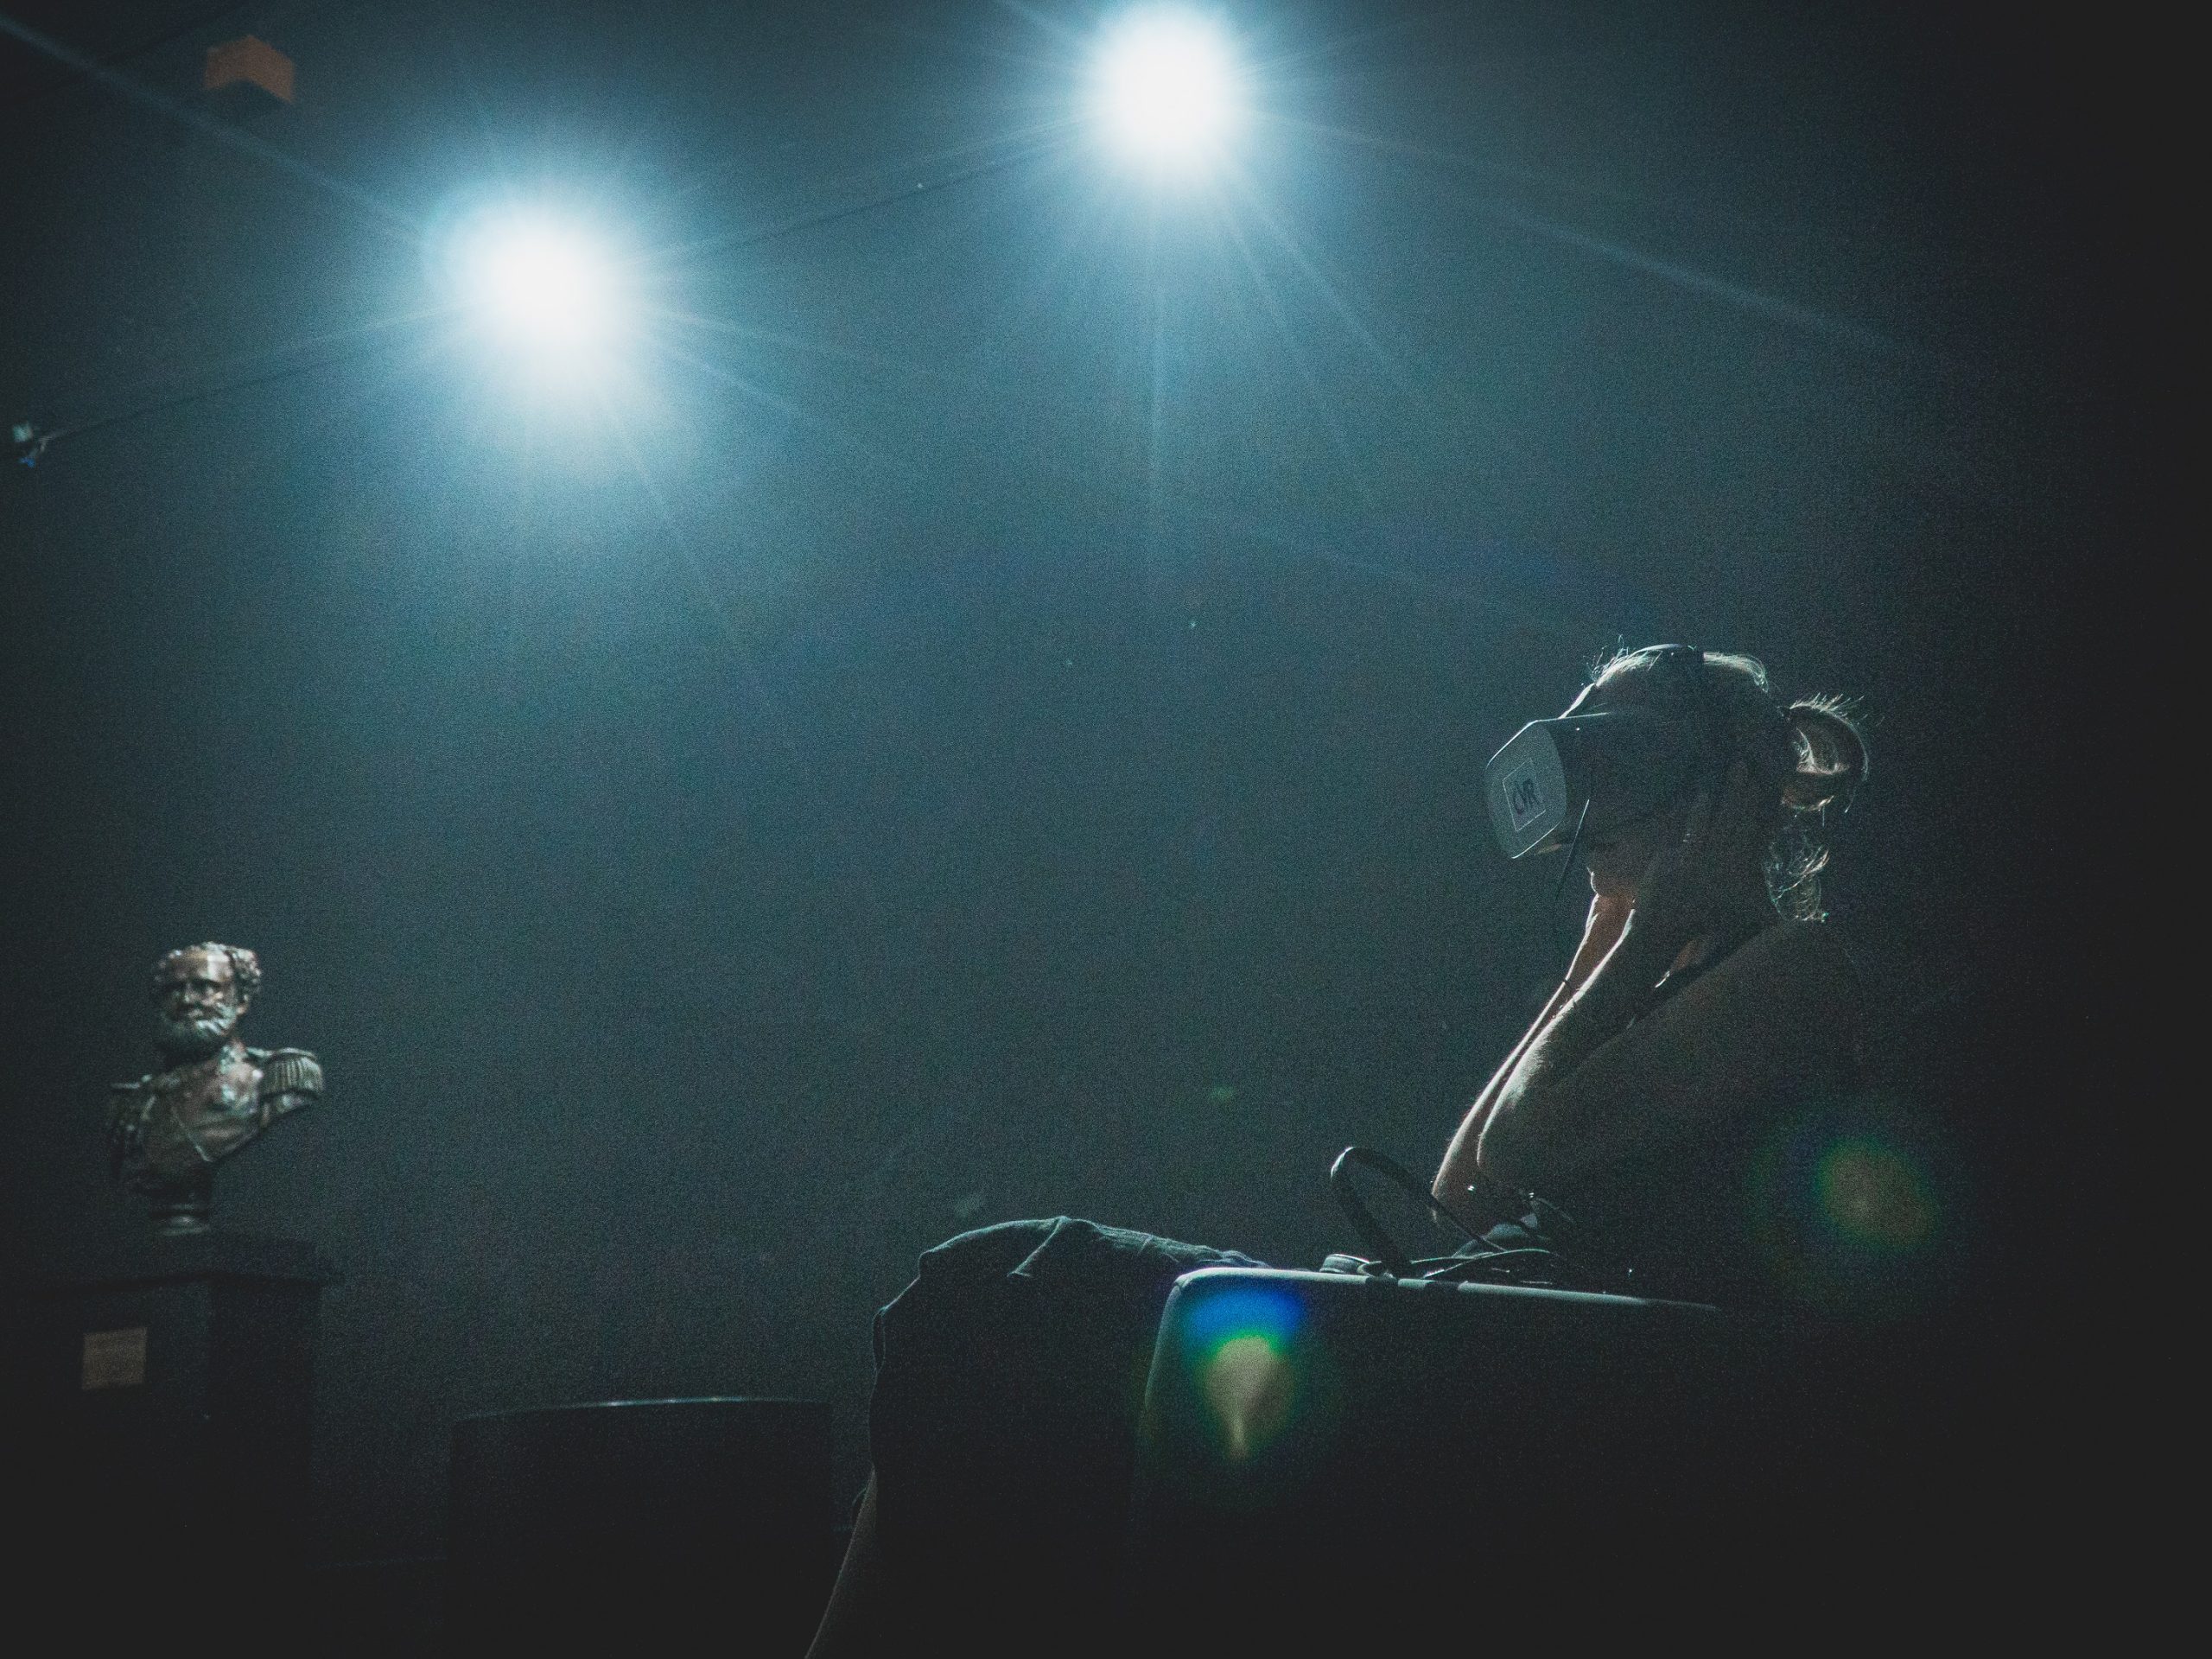 Em sala escura, com duas luzes superiores, mulher sentada usa óculos de realidade virtual